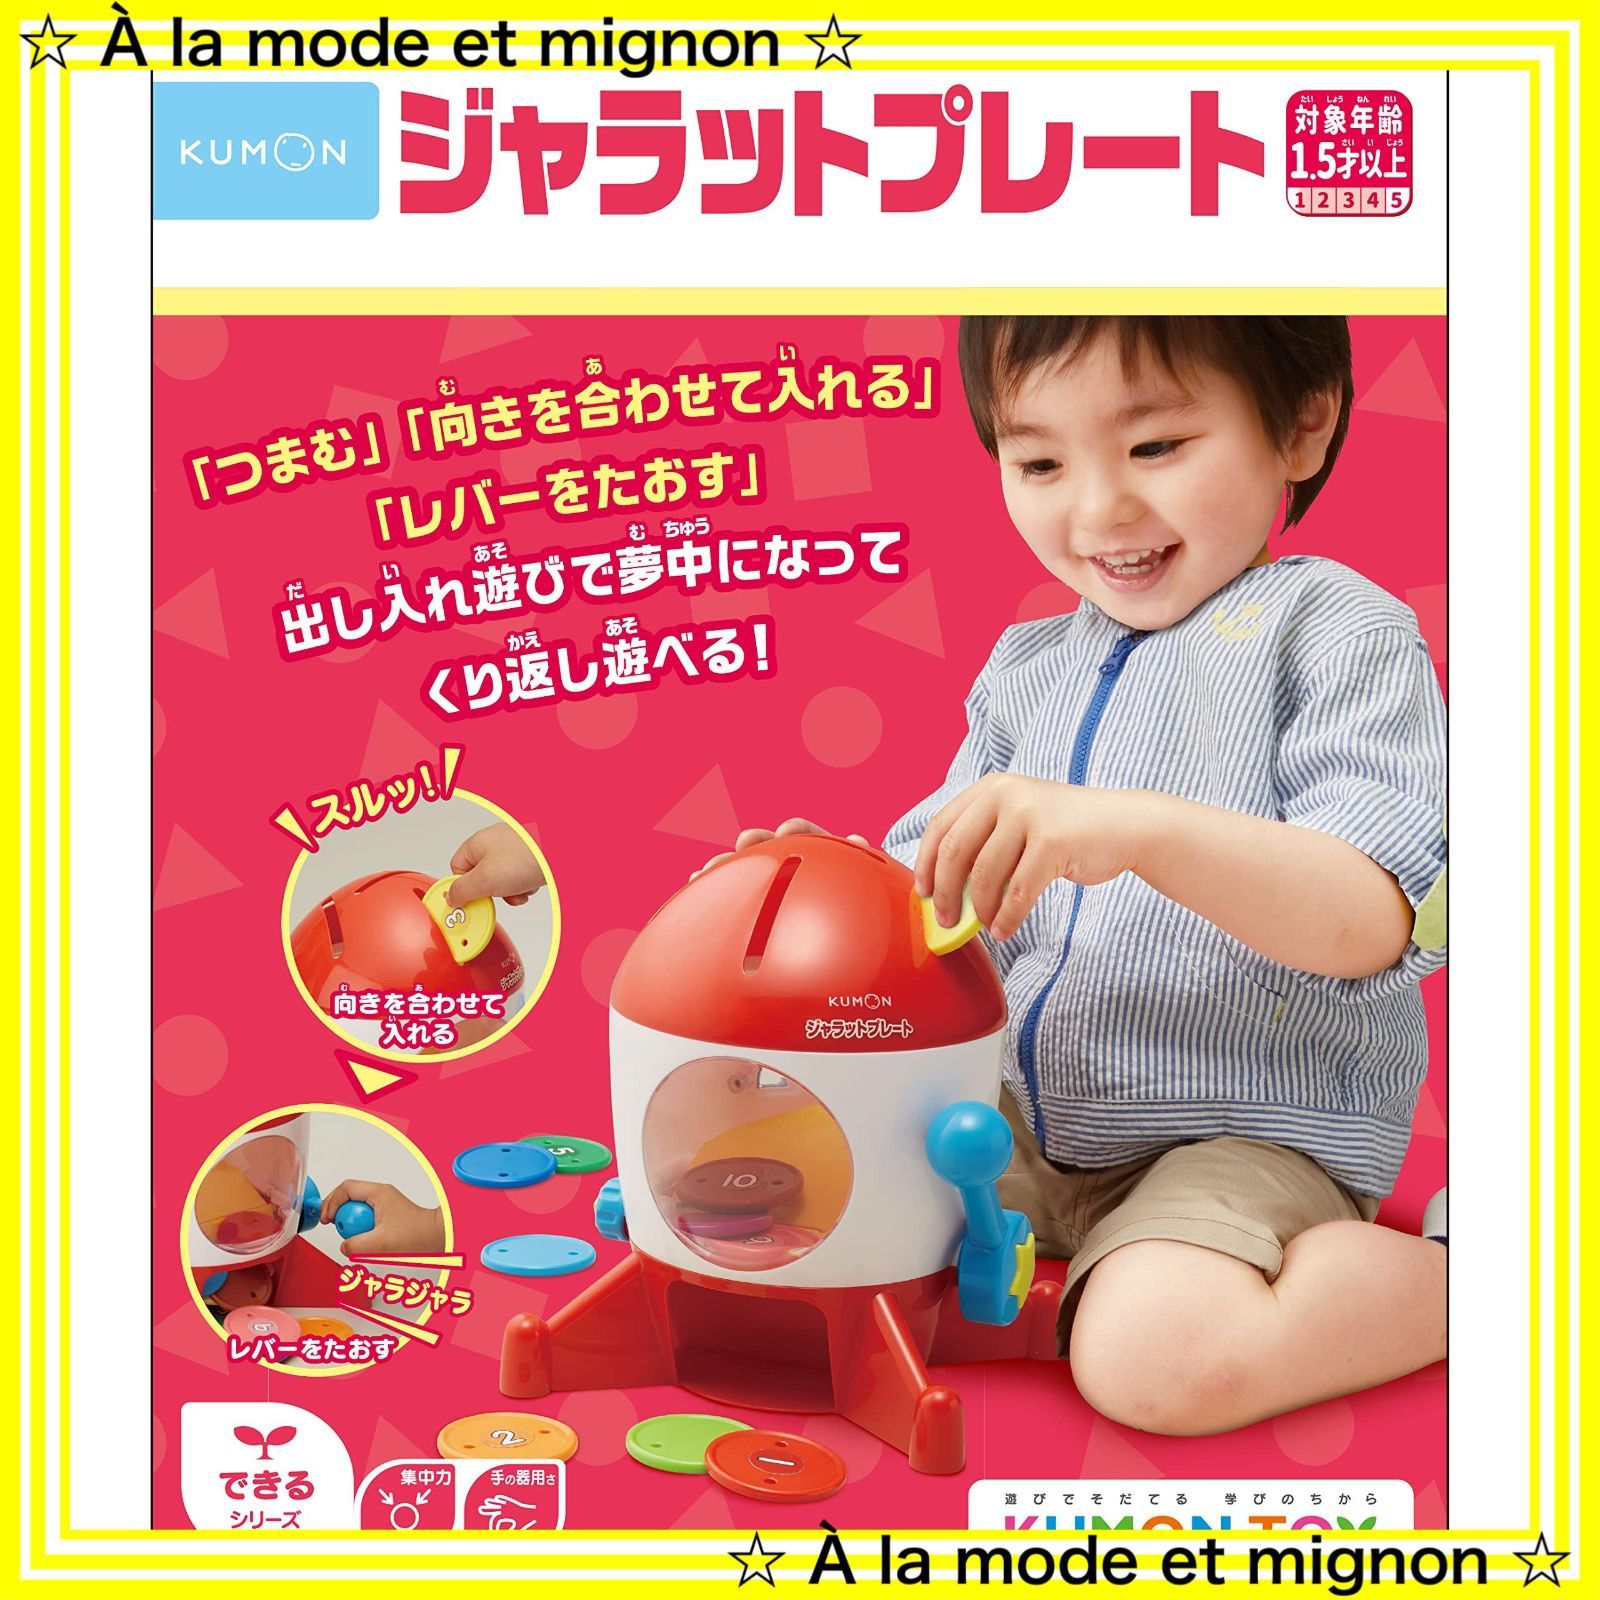 【スピード発送】知育玩具 おもちゃ ジャラットプレート 1.5歳以上 KUMON PUBLISHING) ワンサイズ くもん出版(KUMON BJ-11